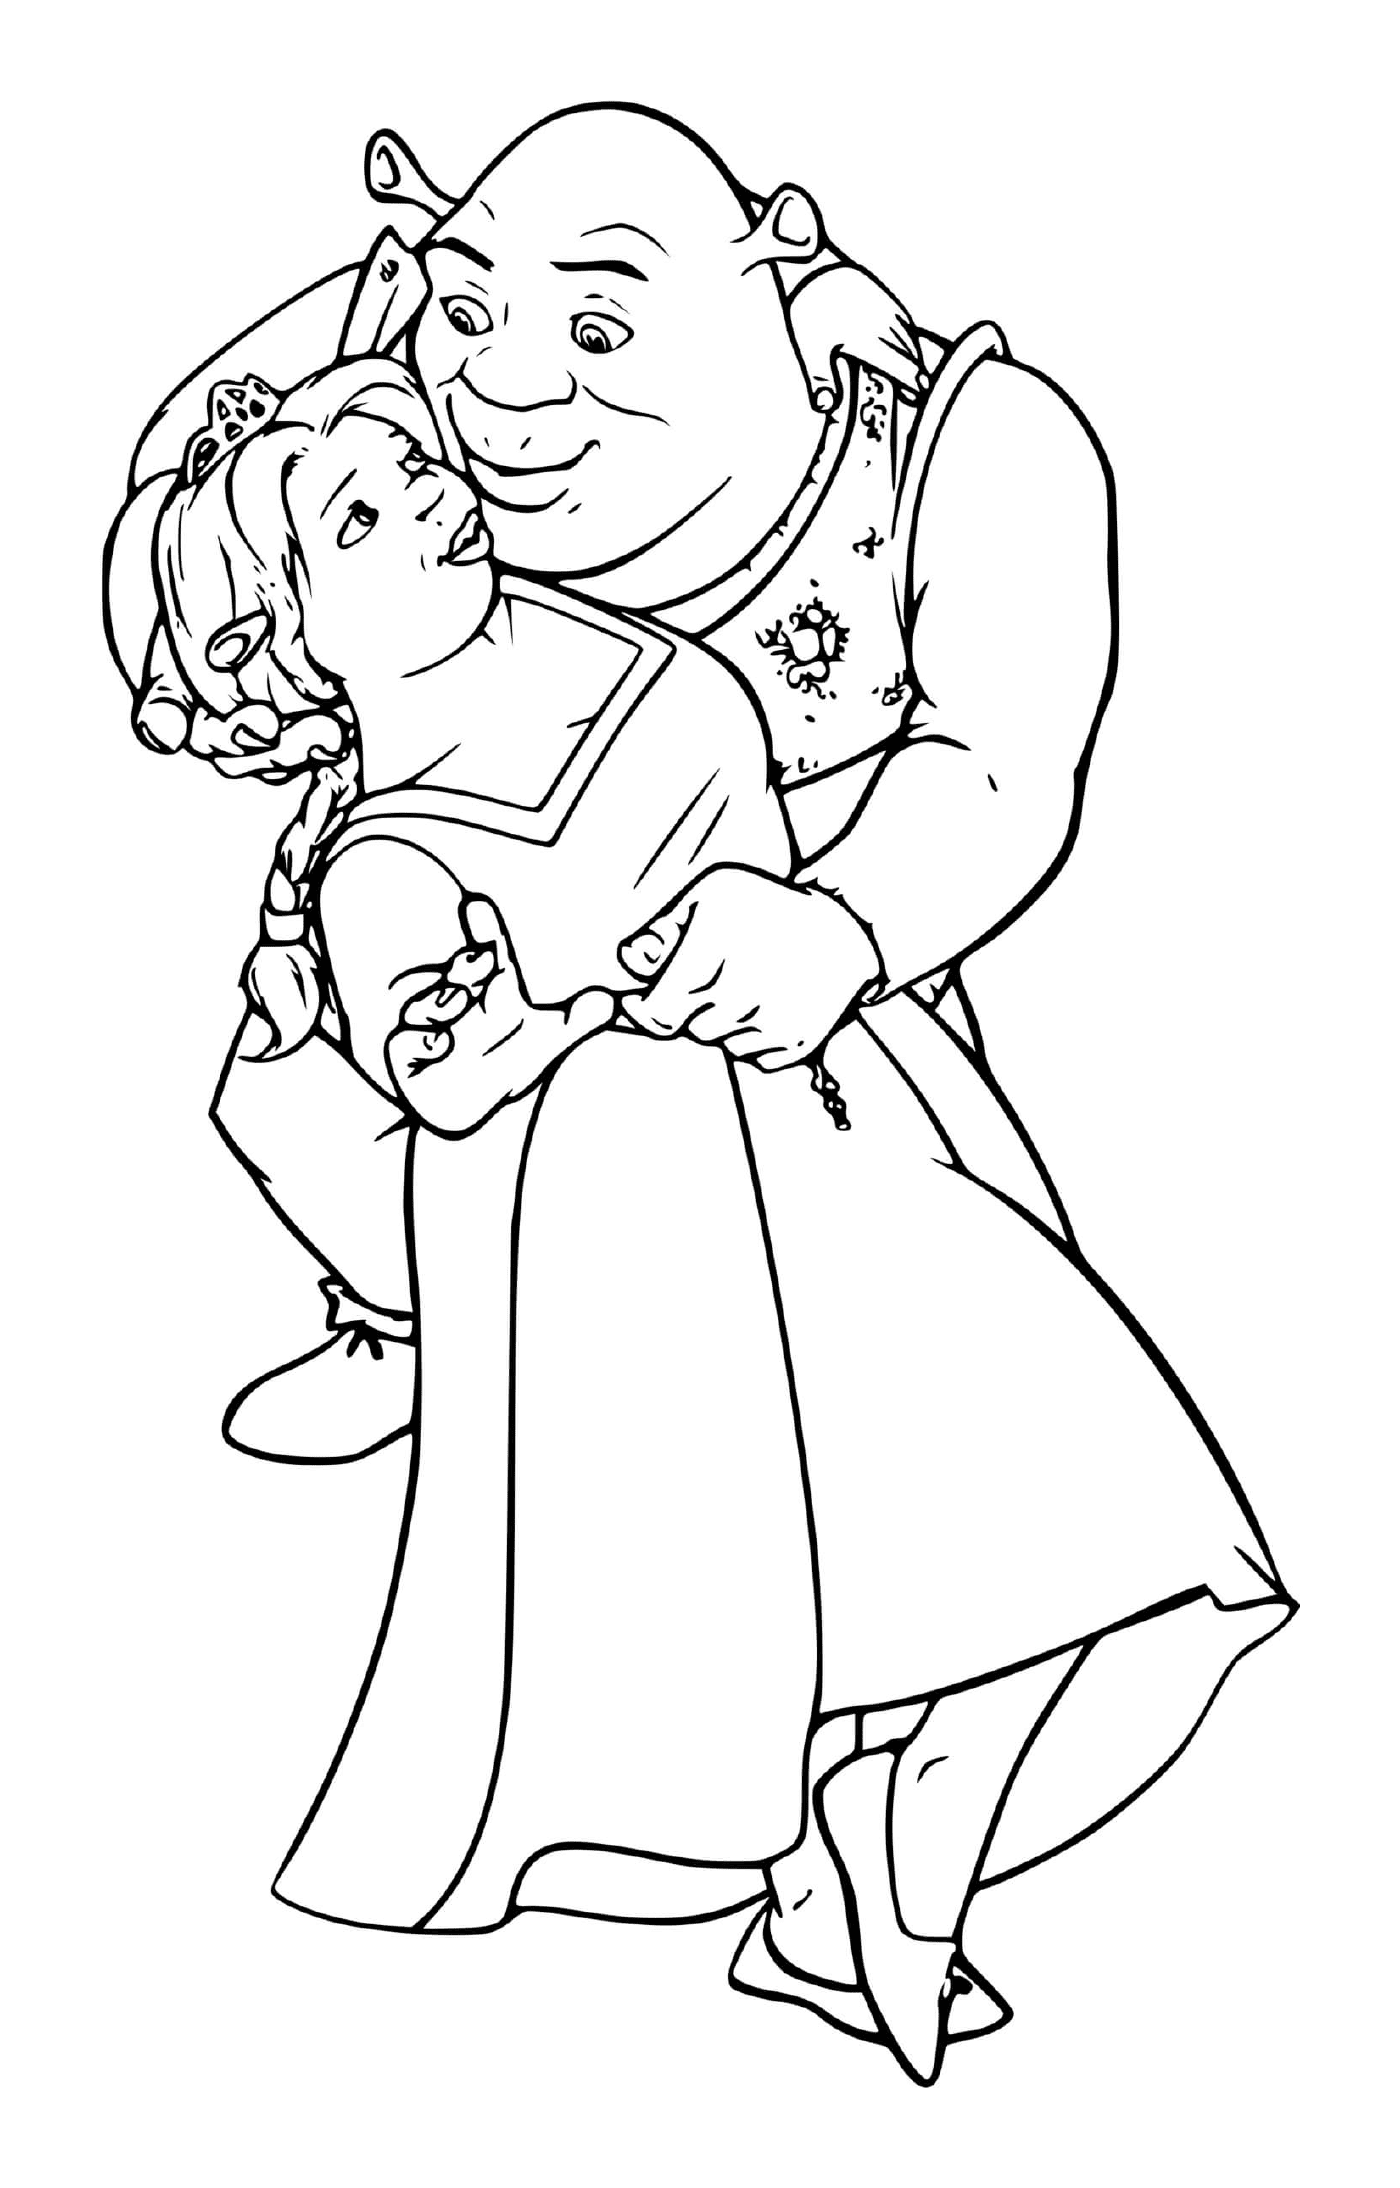  Ein alter Mann, der ein kleines Mädchen in den Armen hält 